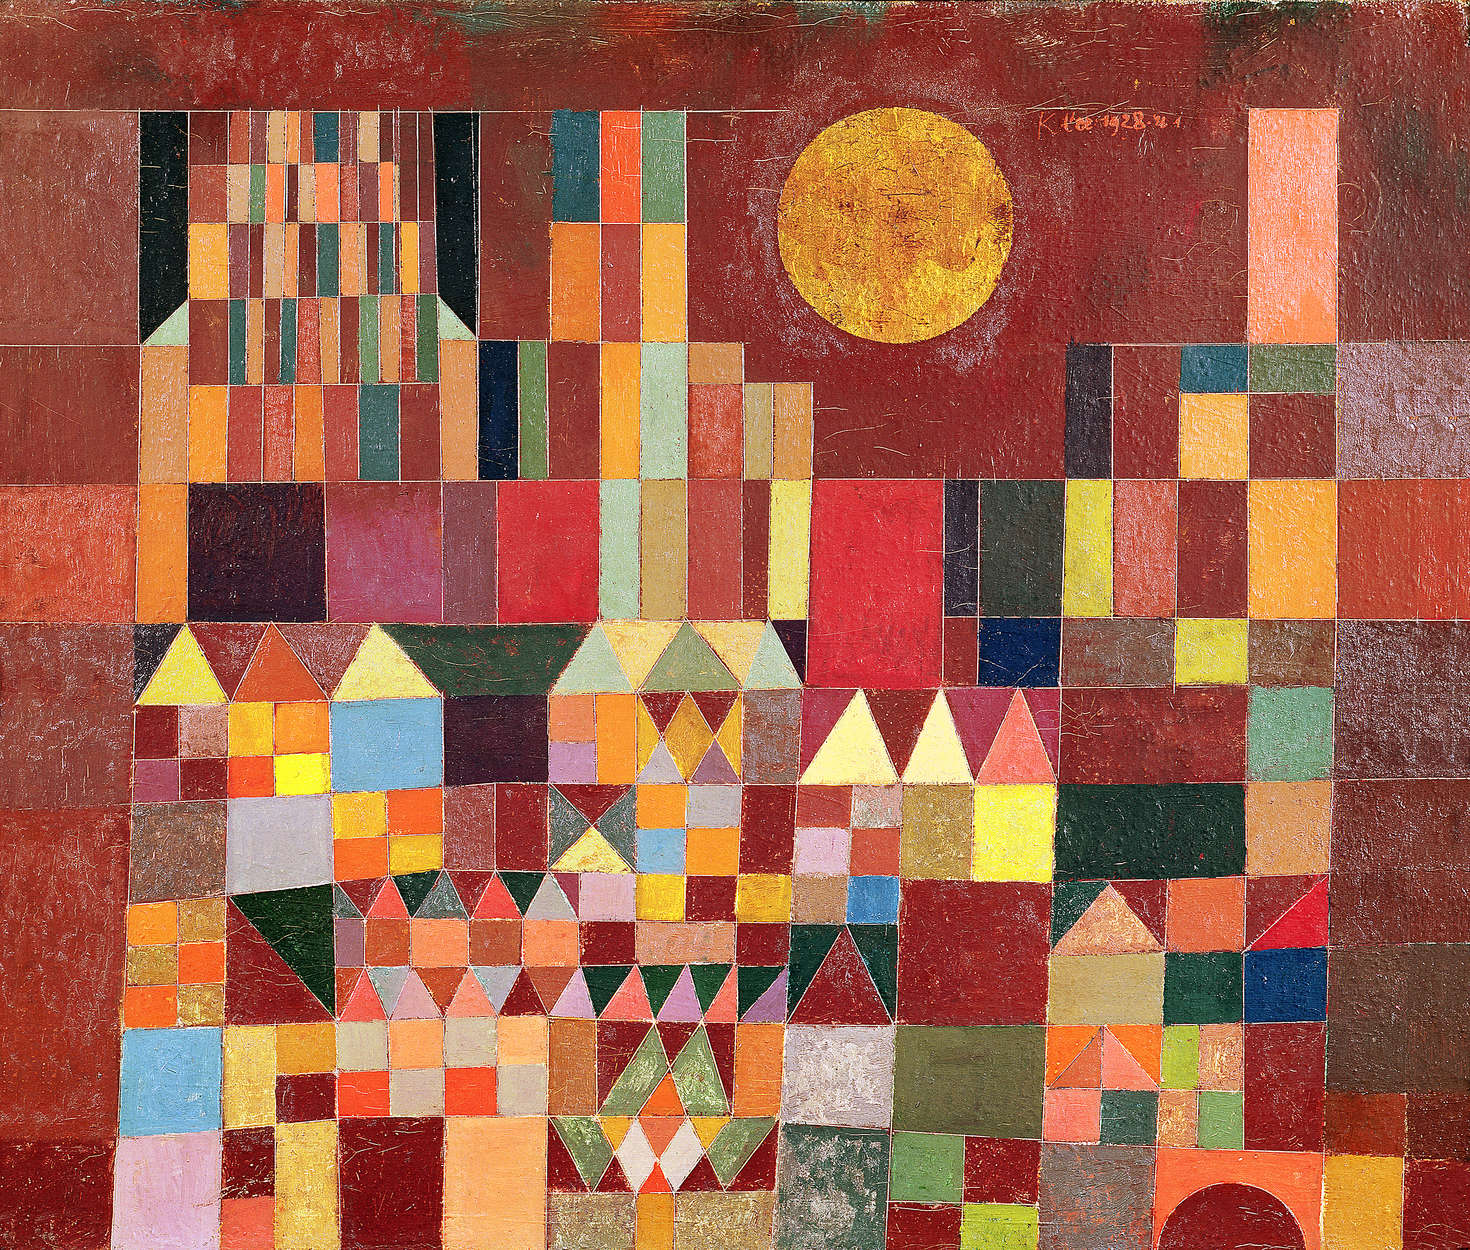             Mural "Castillo y sol" de Paul Klee
        